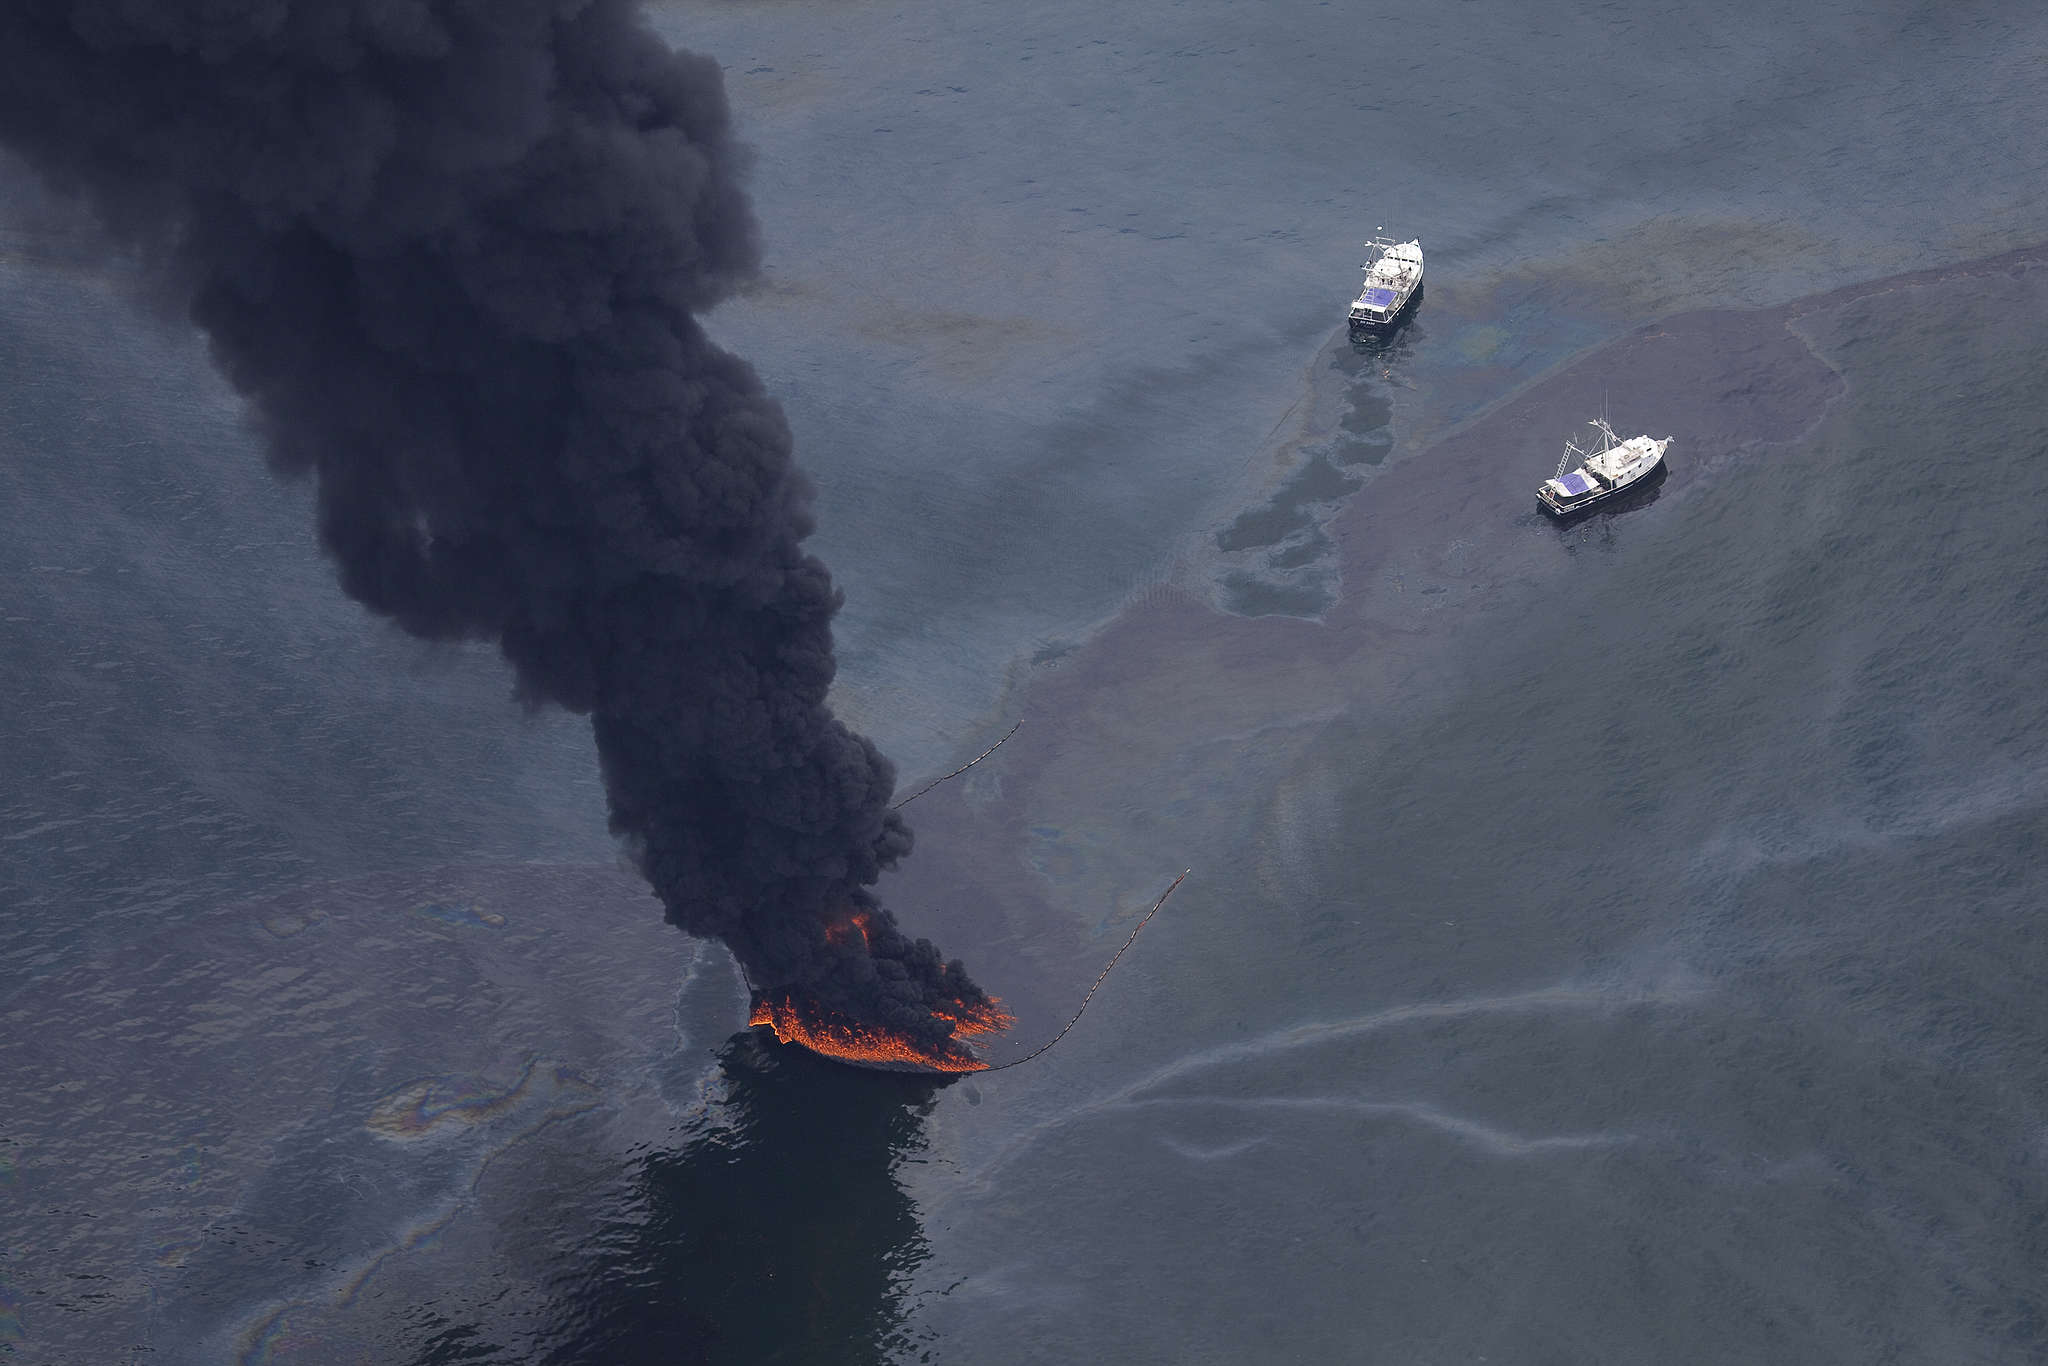 Взрыв на поверхности воды. Разлив нефти в мексиканском заливе 2010. Deepwater Horizon разлив нефти. Взрыв нефтяной платформы Deepwater Horizon 2010. Катастрофа Deepwater Horizon в мексиканском заливе.